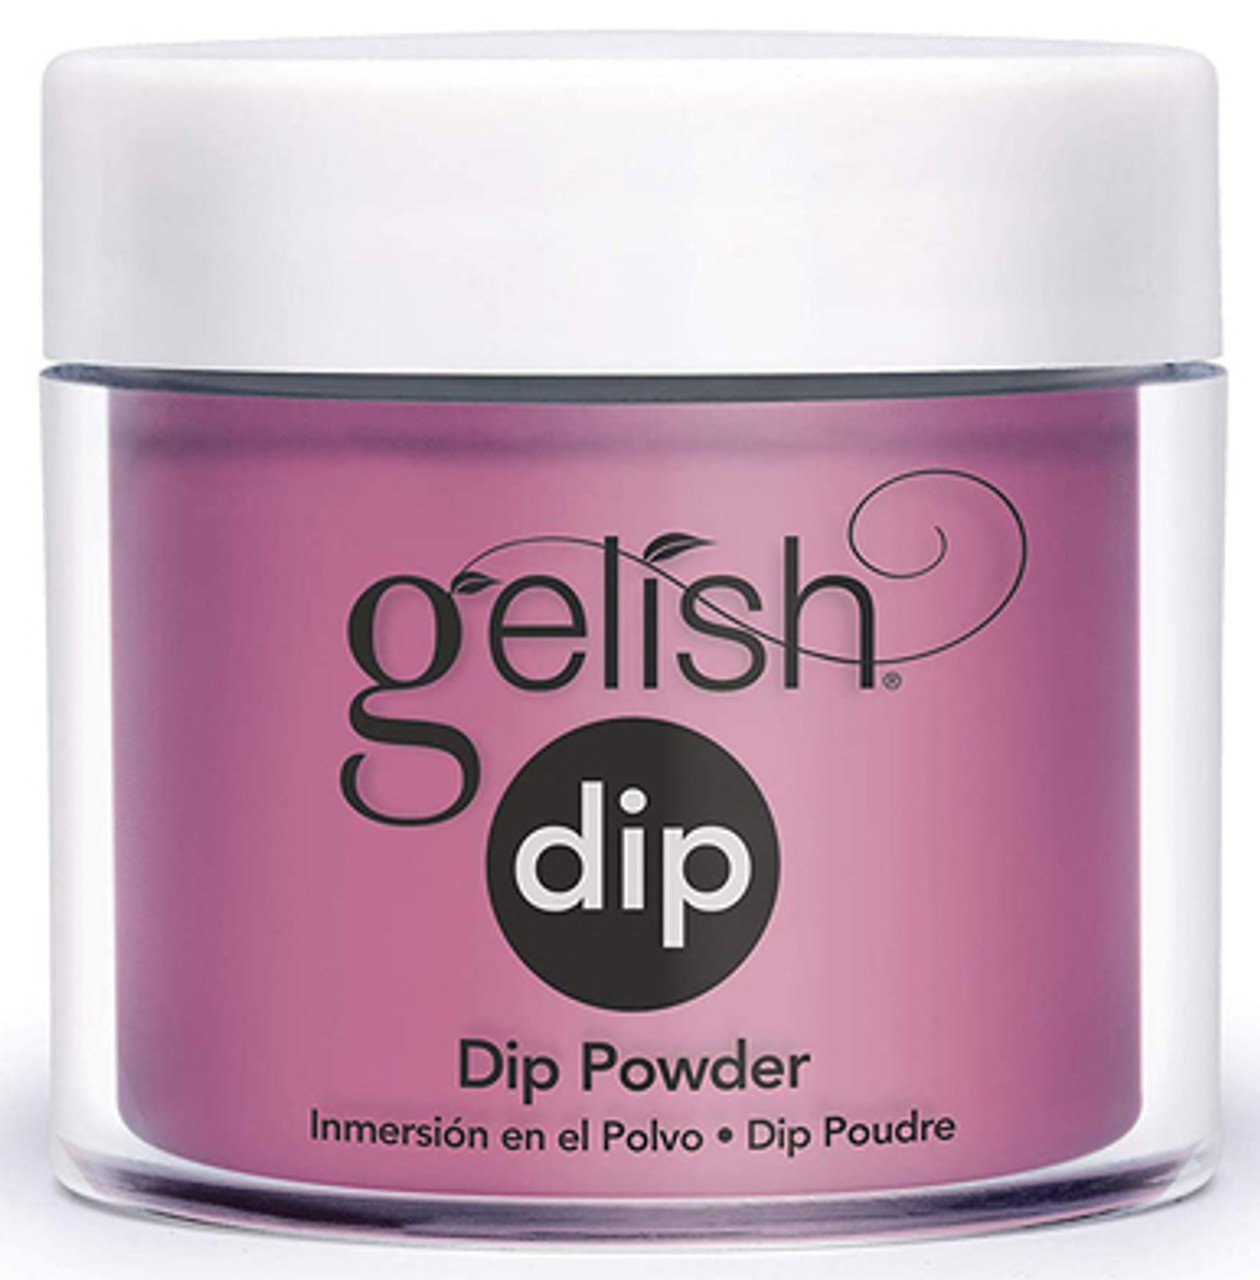 Gelish Dip Powder Going Vogue - 0.8 oz / 23 g